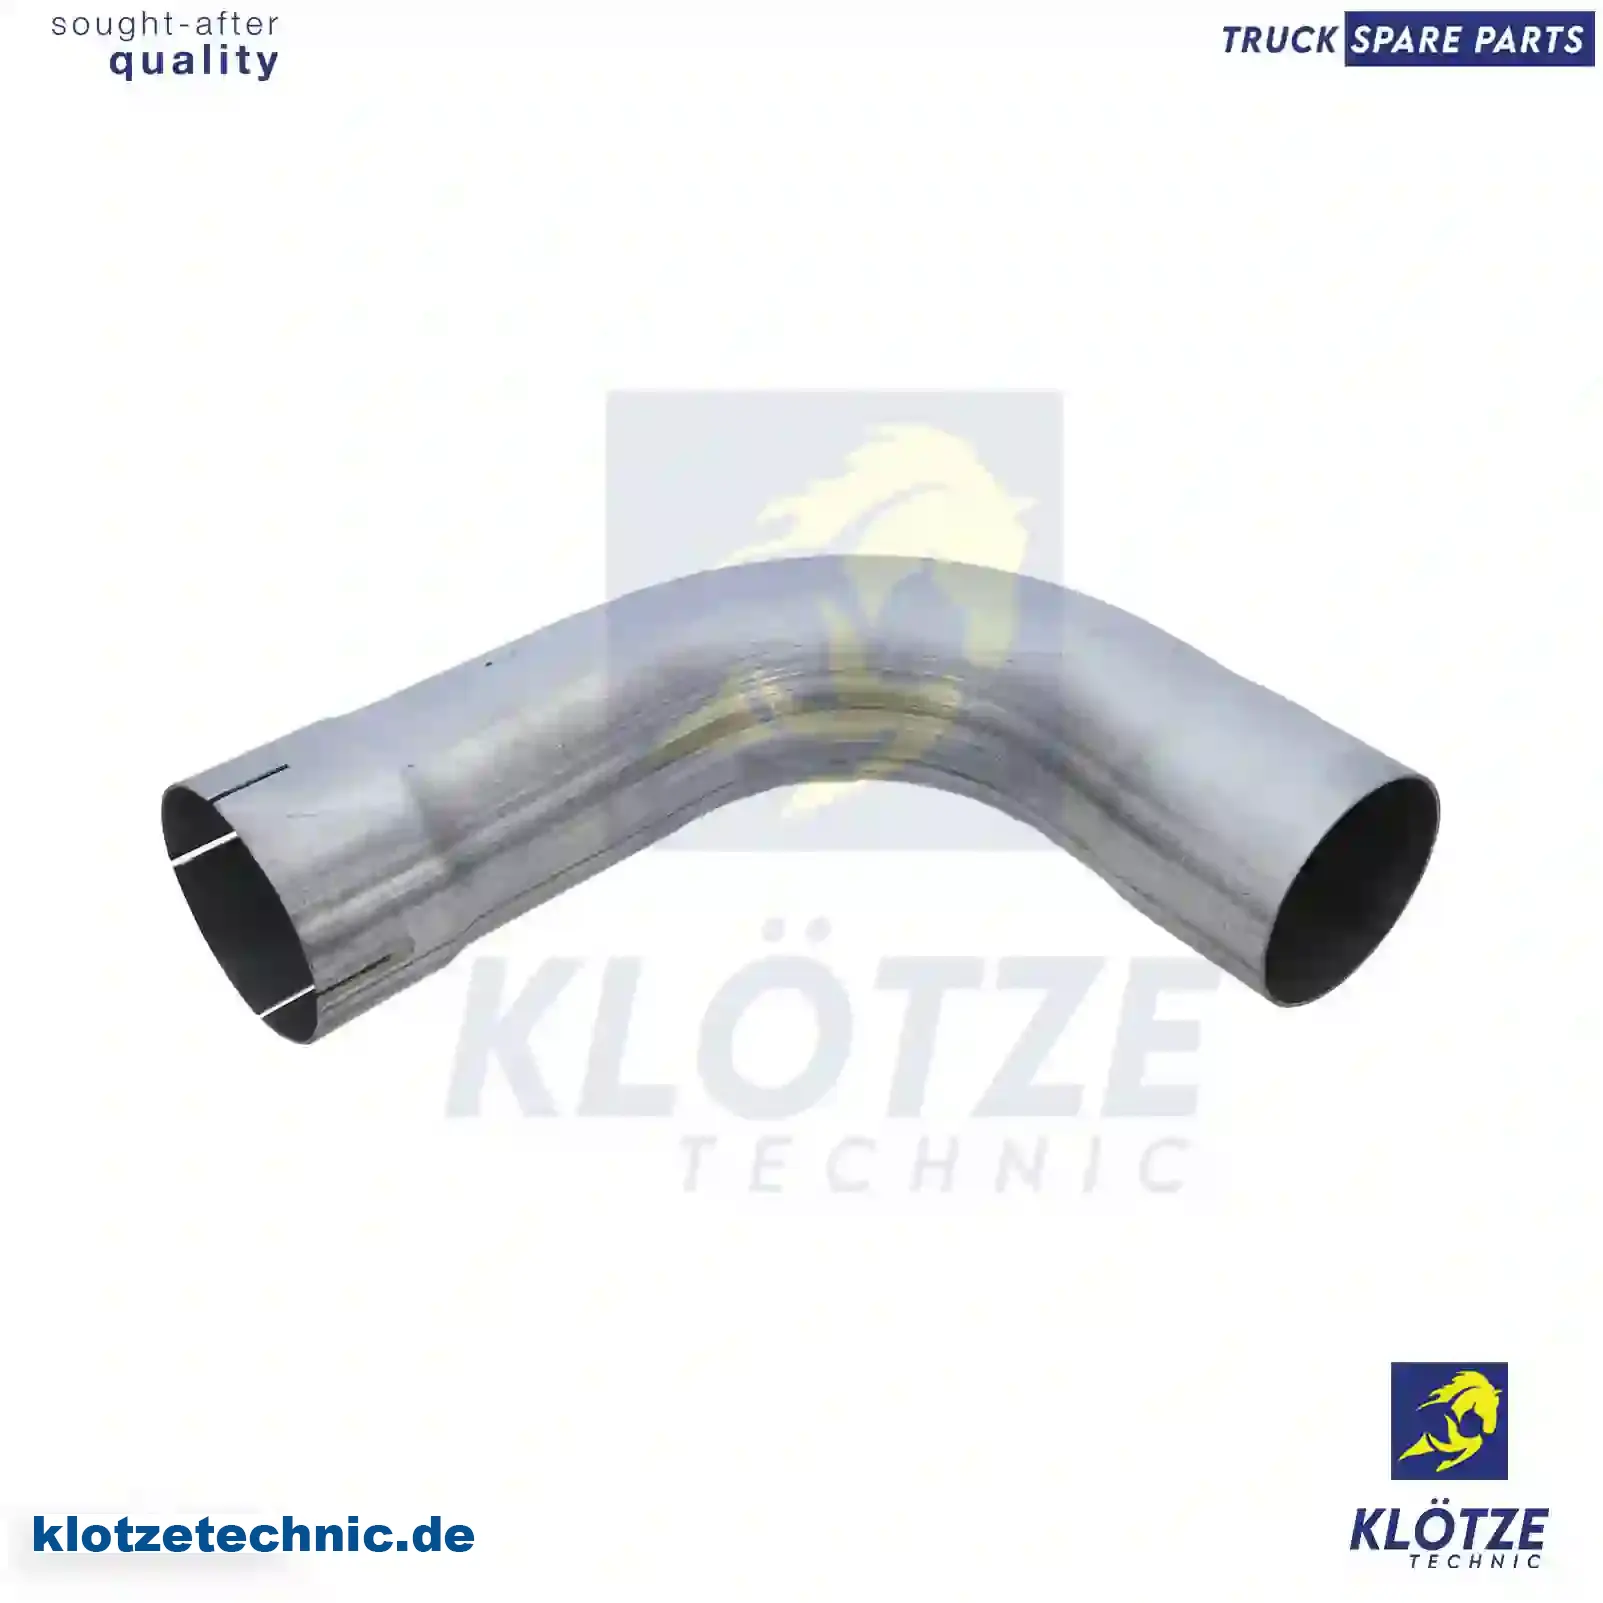 Exhaust pipe, 81152040483 || Klötze Technic